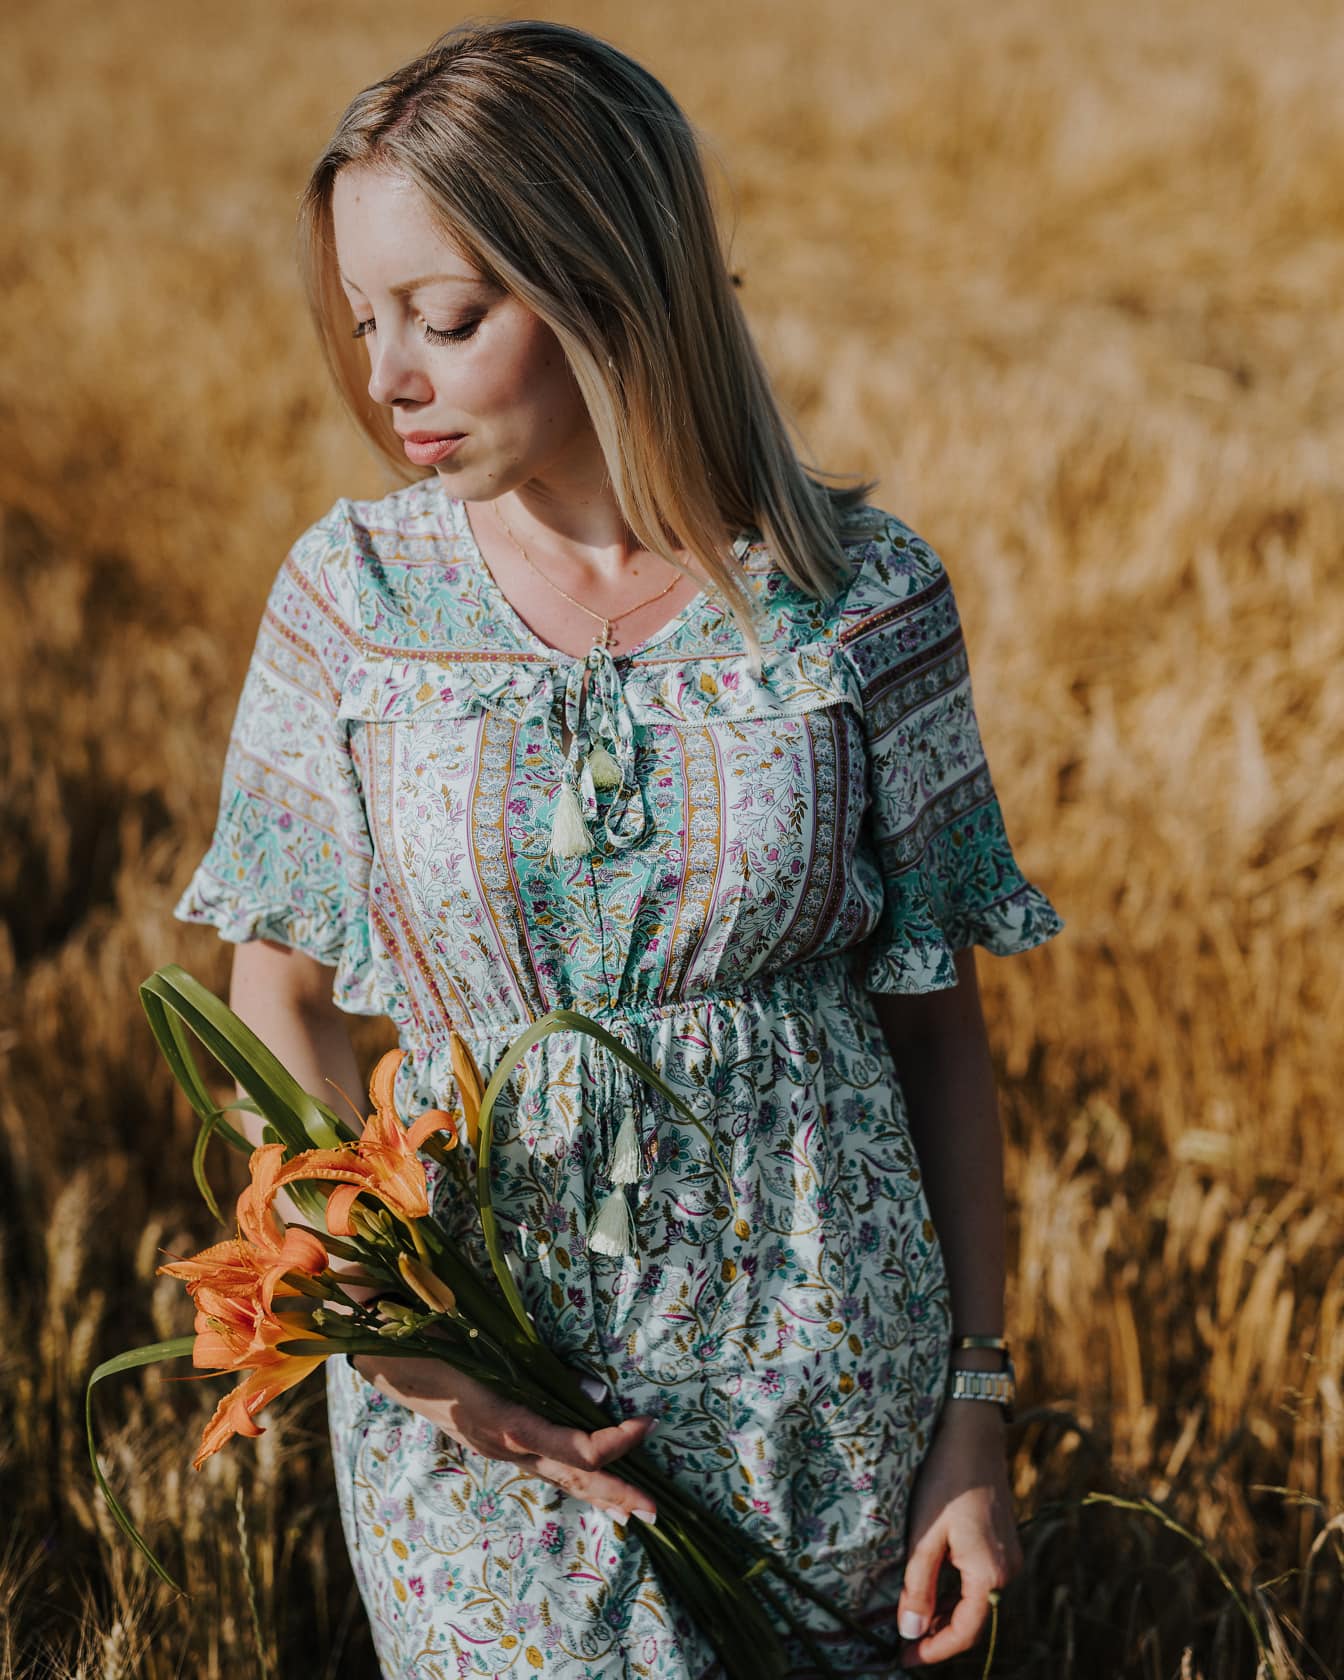 民族衣装を着た田舎の美女が麦畑に花を咲かせている